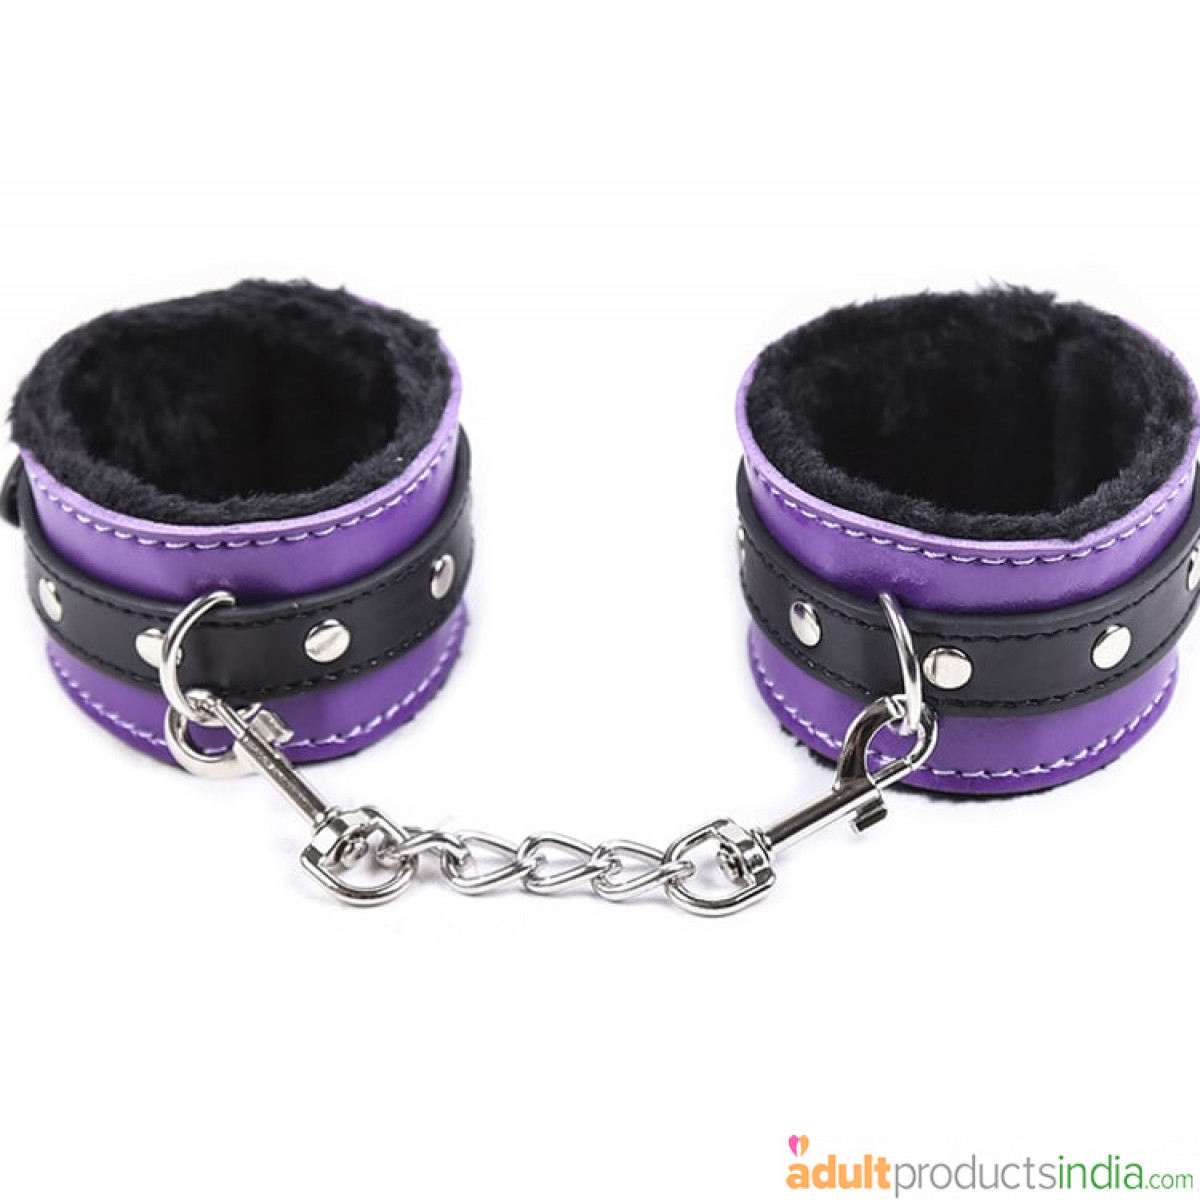 Soft Plush PU Leather Hand Cuffs - Purple